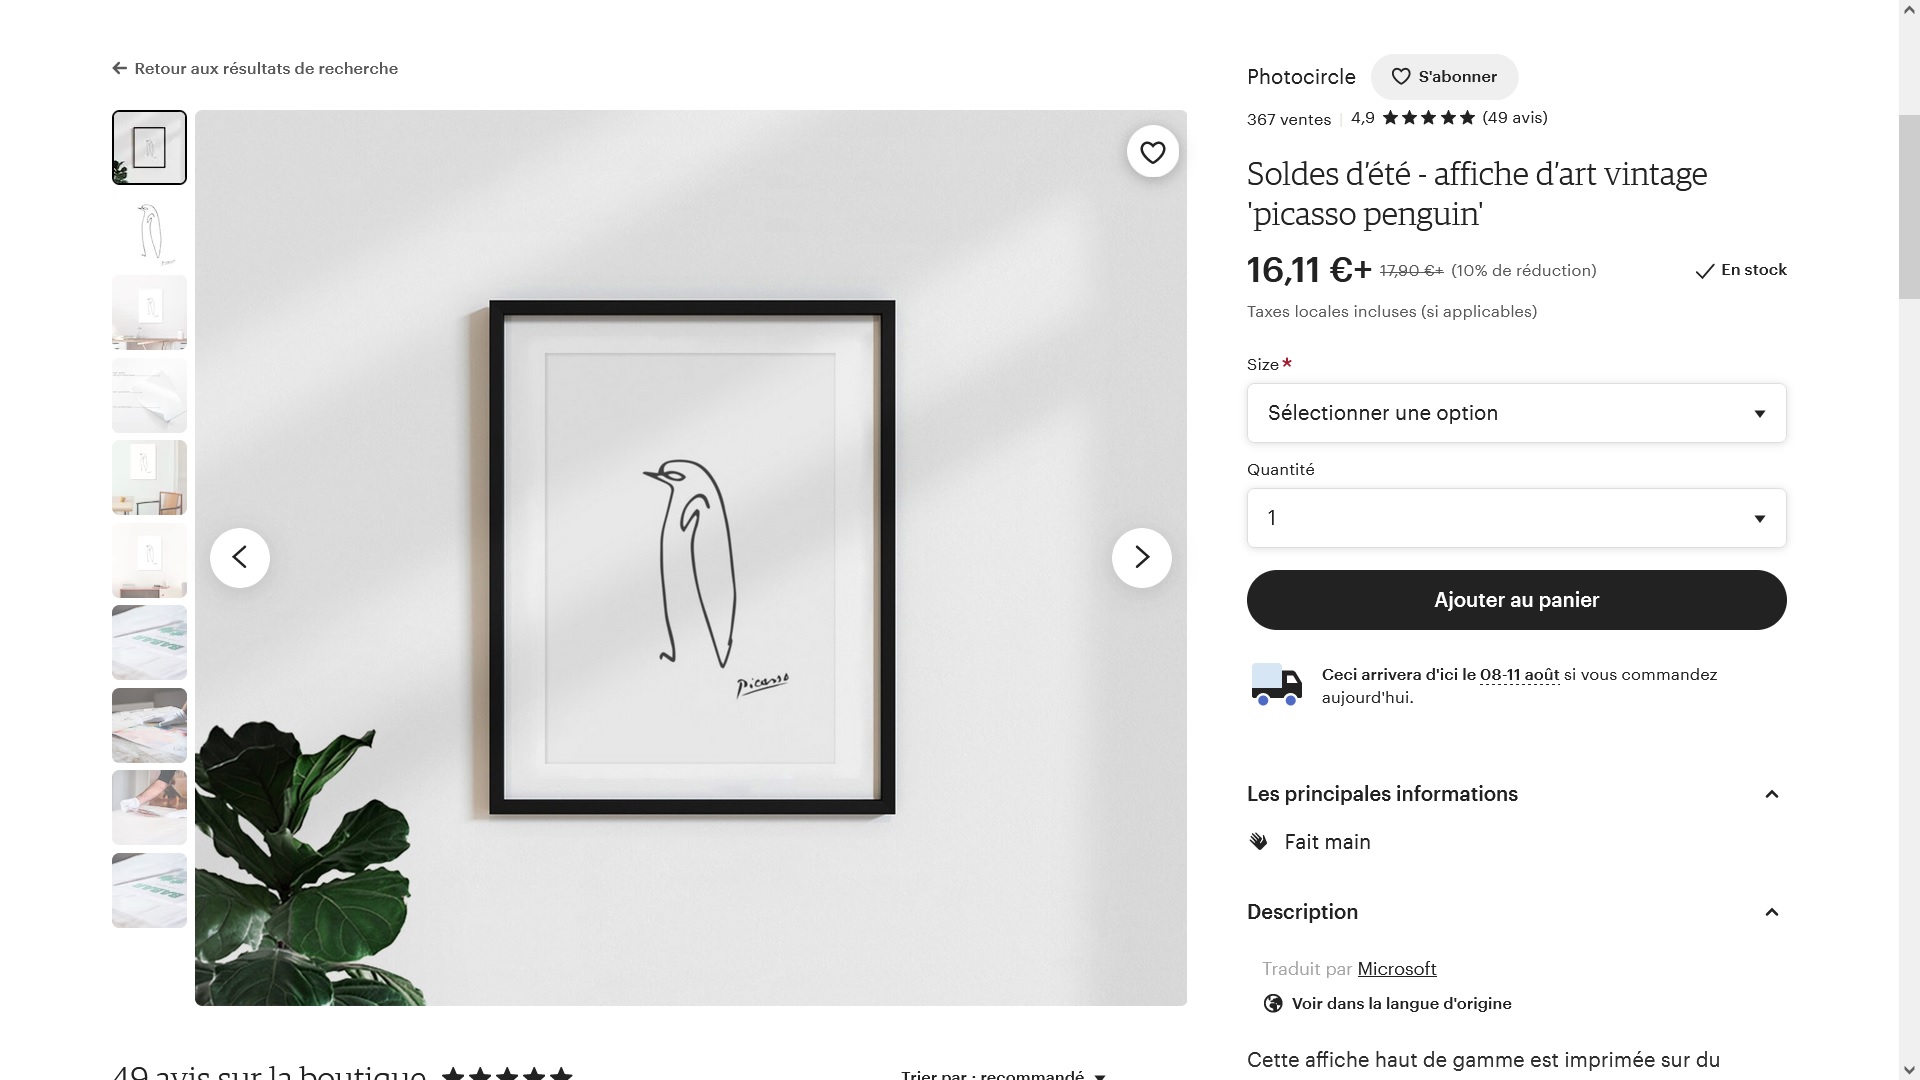 Le Poster du Pingouin de Picasso (PPP), comme un oiseau en cage. Toutes les révolutions sont un jour récupérées. Capture d'écran